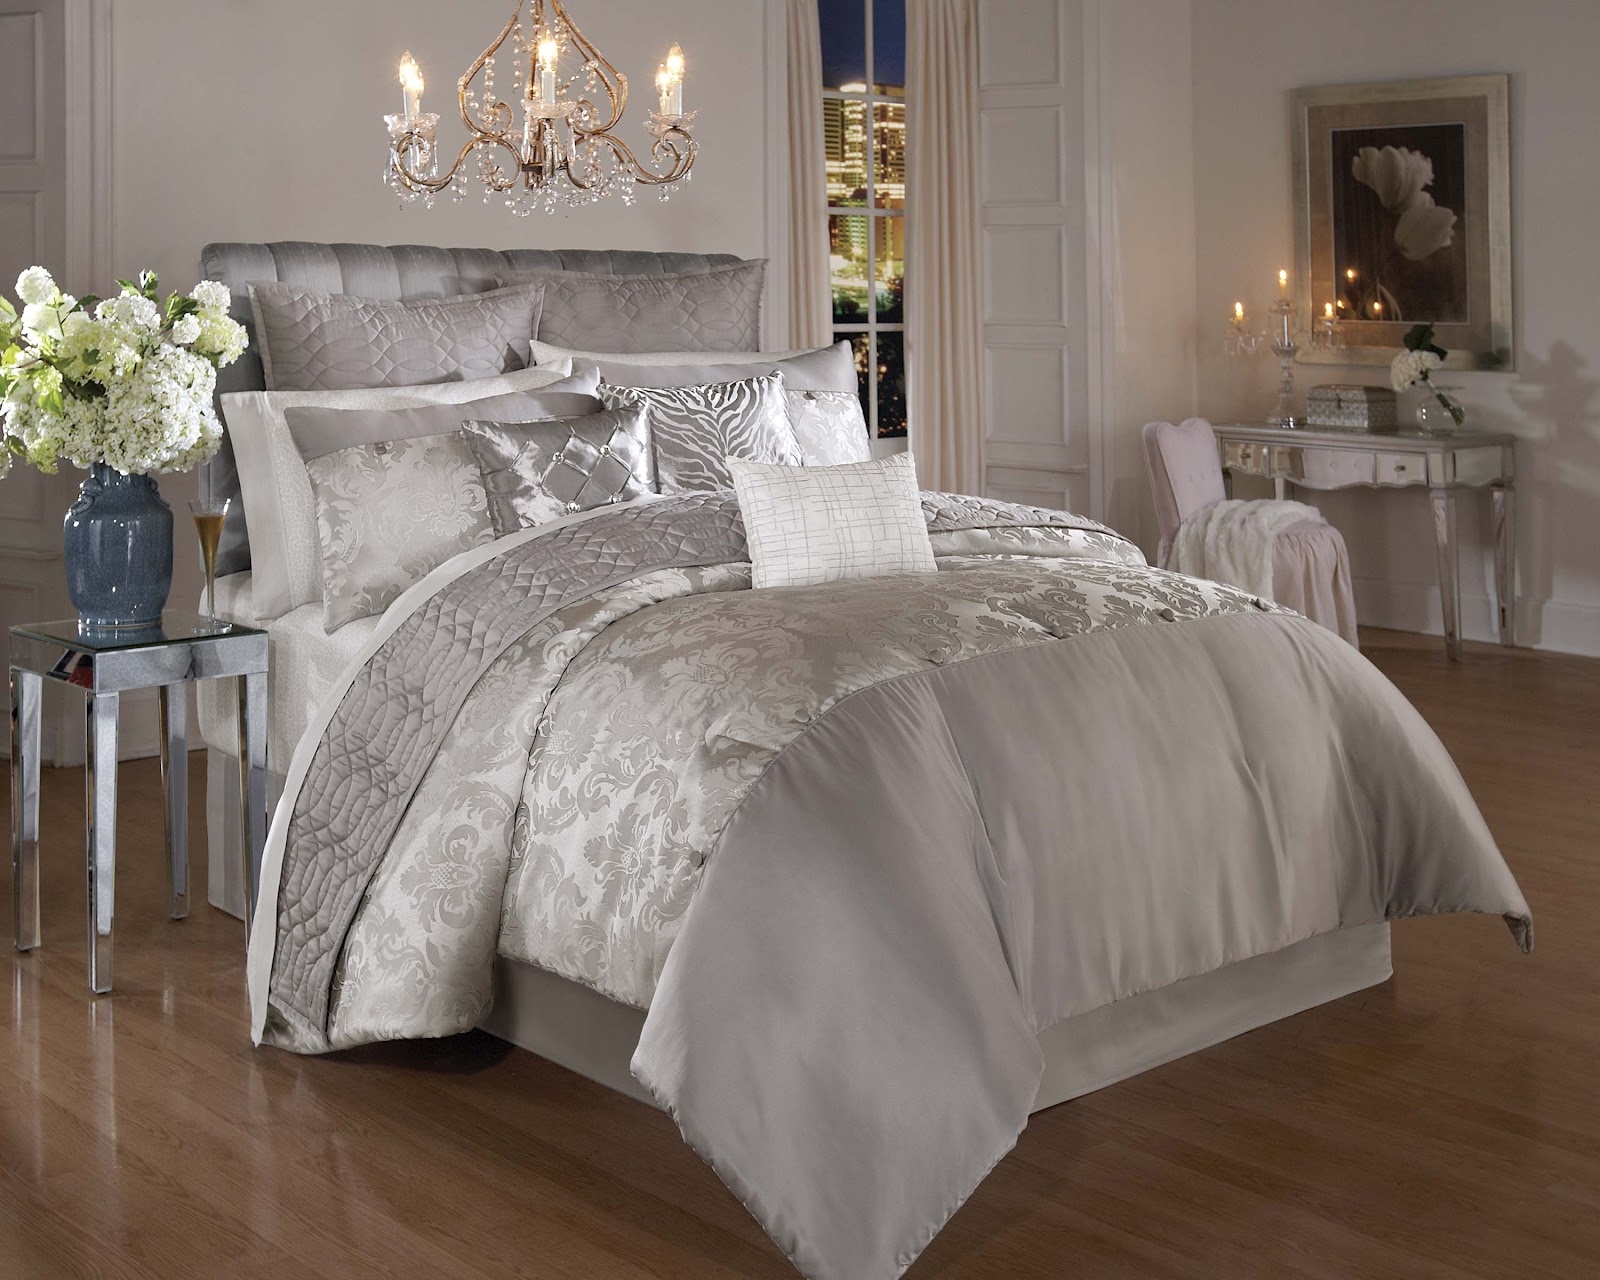 silver embossed bedroom furniture